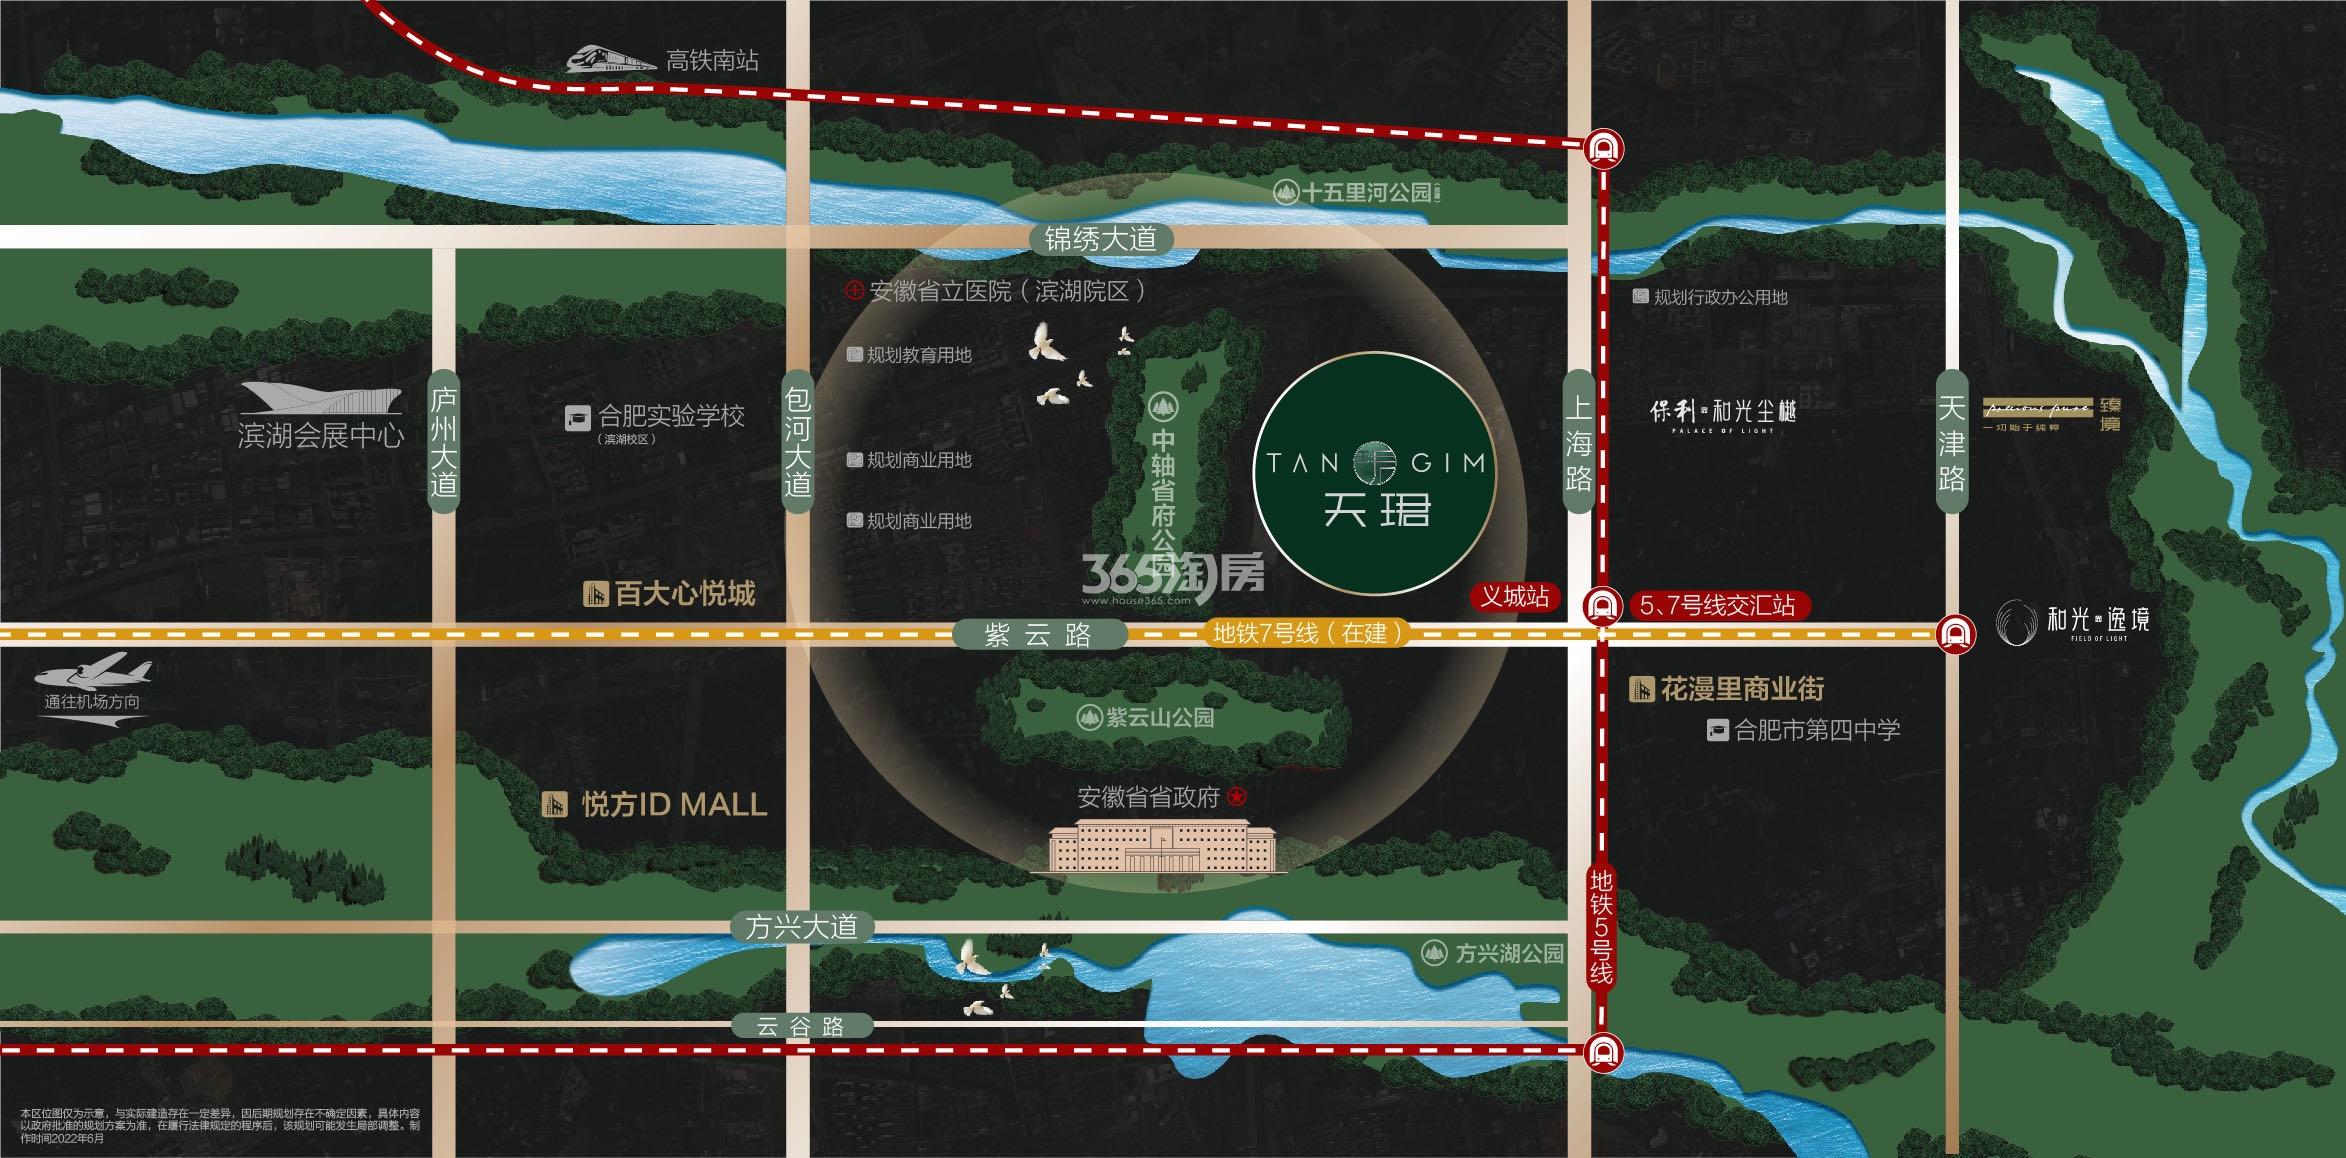 3y体育最全地产项目开发全流程图解(建议收藏)!-上海365淘房网-房地产开发流程(图8)